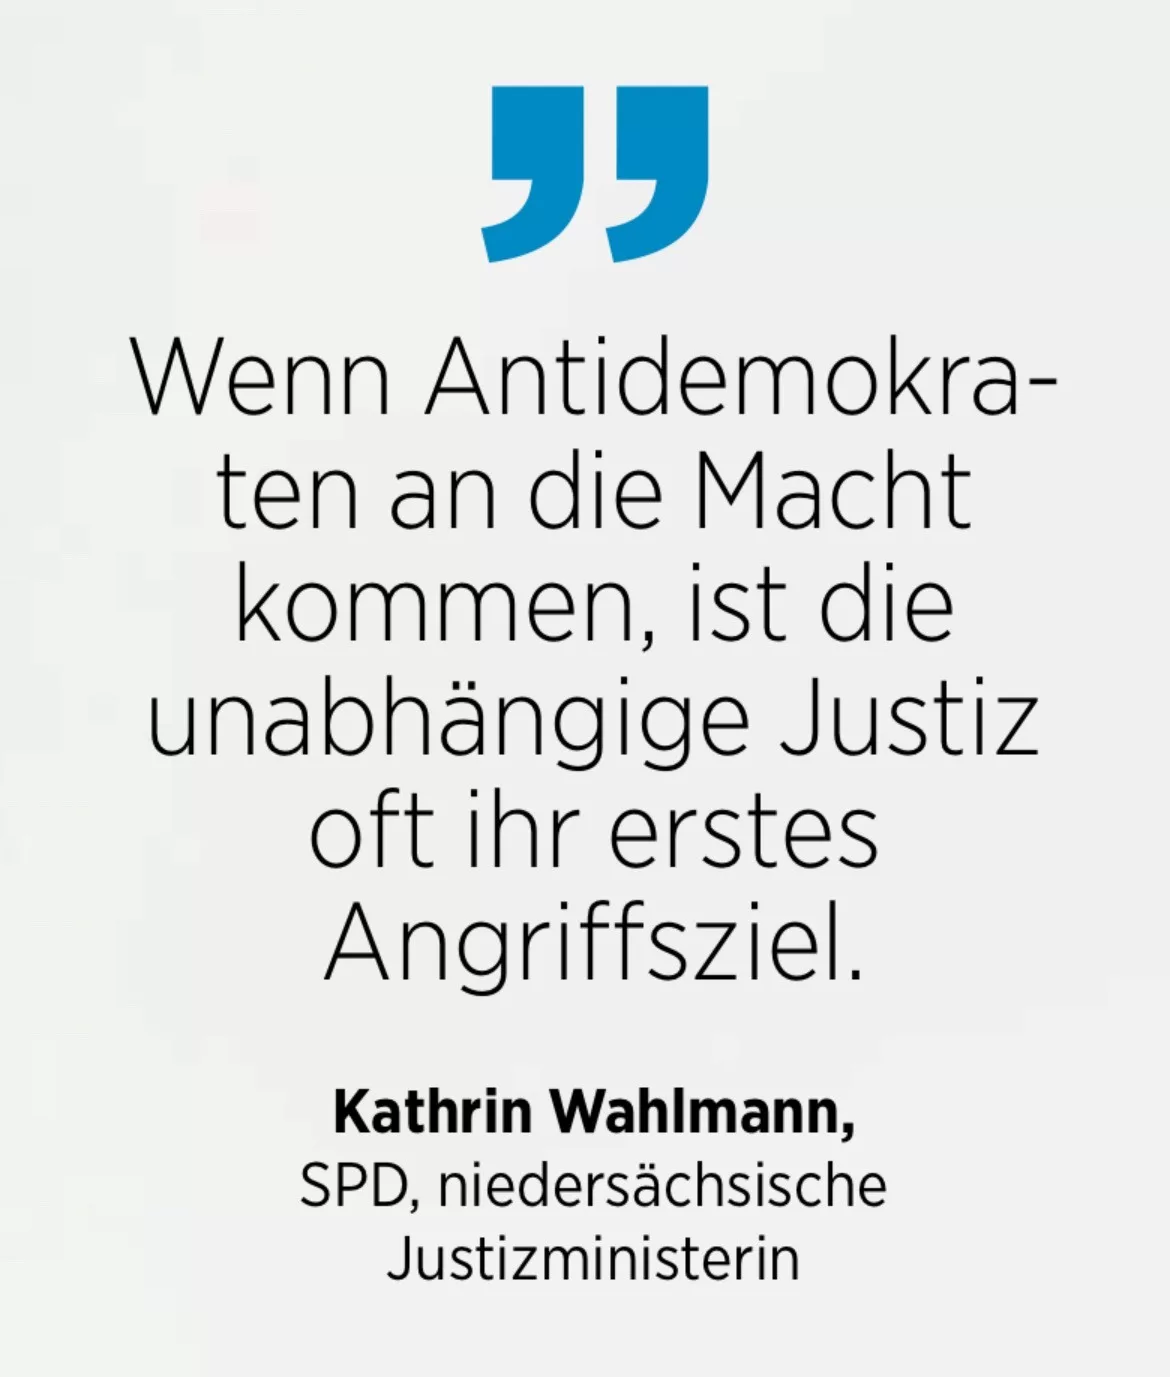 Kathrin Wahlmann, SPD, niedersächsische Justizministerin: Wenn Antidemokra-ten an die Macht kommen, ist die unabhängige Justiz oft ihr erstes Angriffsziel.